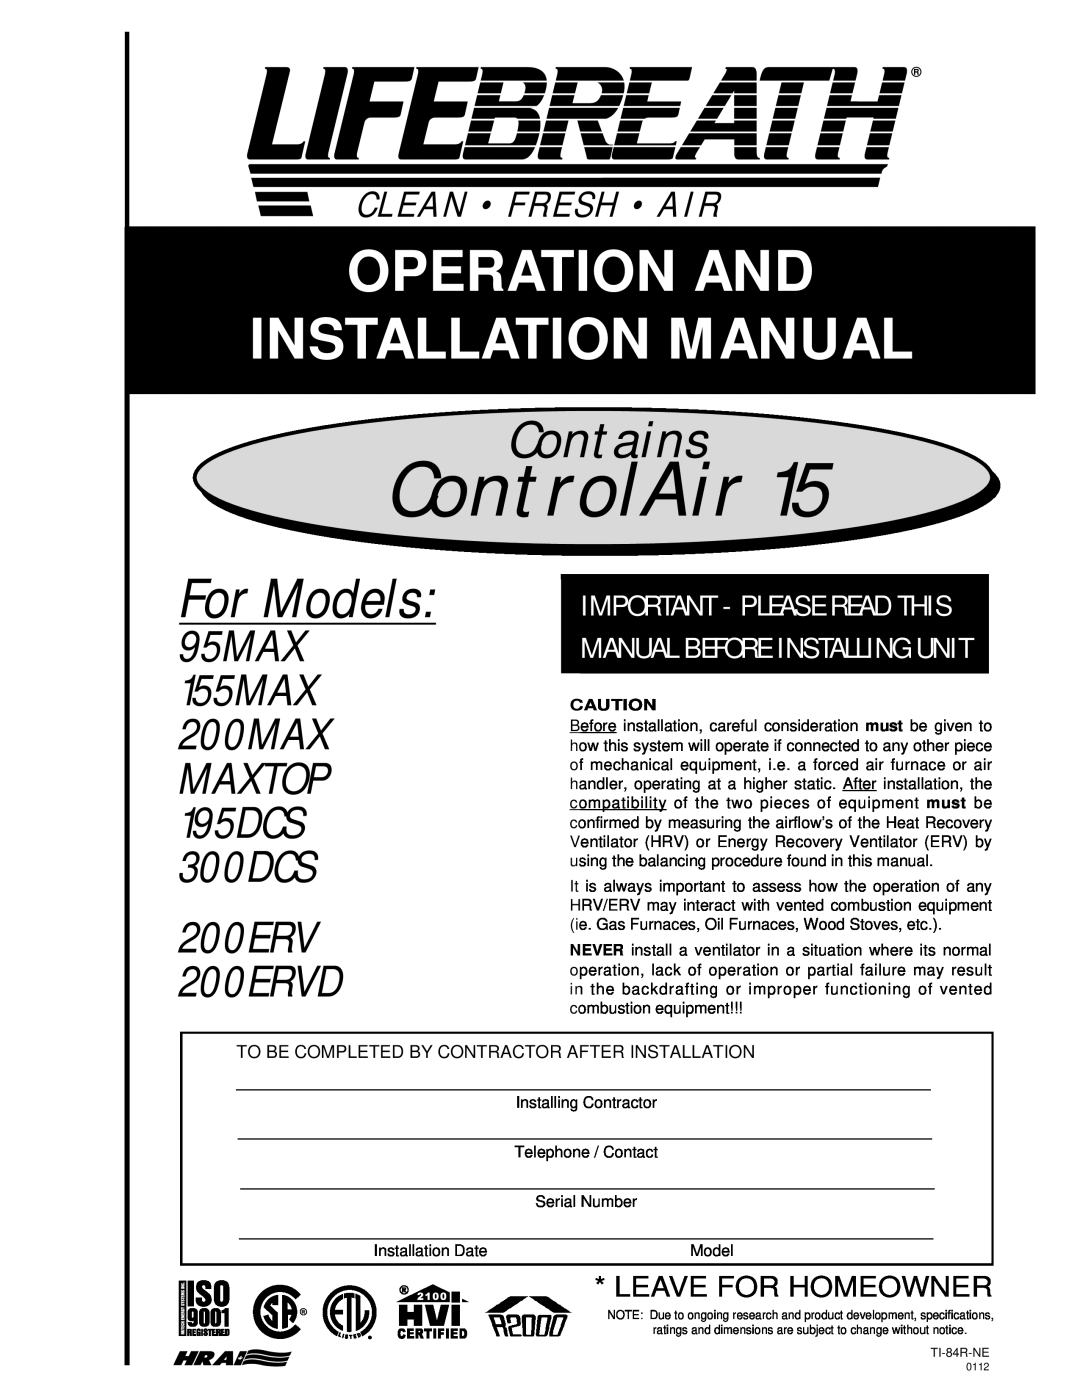 Lifebreath installation manual For Models, Contains, 95MAX 155MAX 200MAX, 200ERV 200ERVD, MAXTOP 195DCS 300DCS 